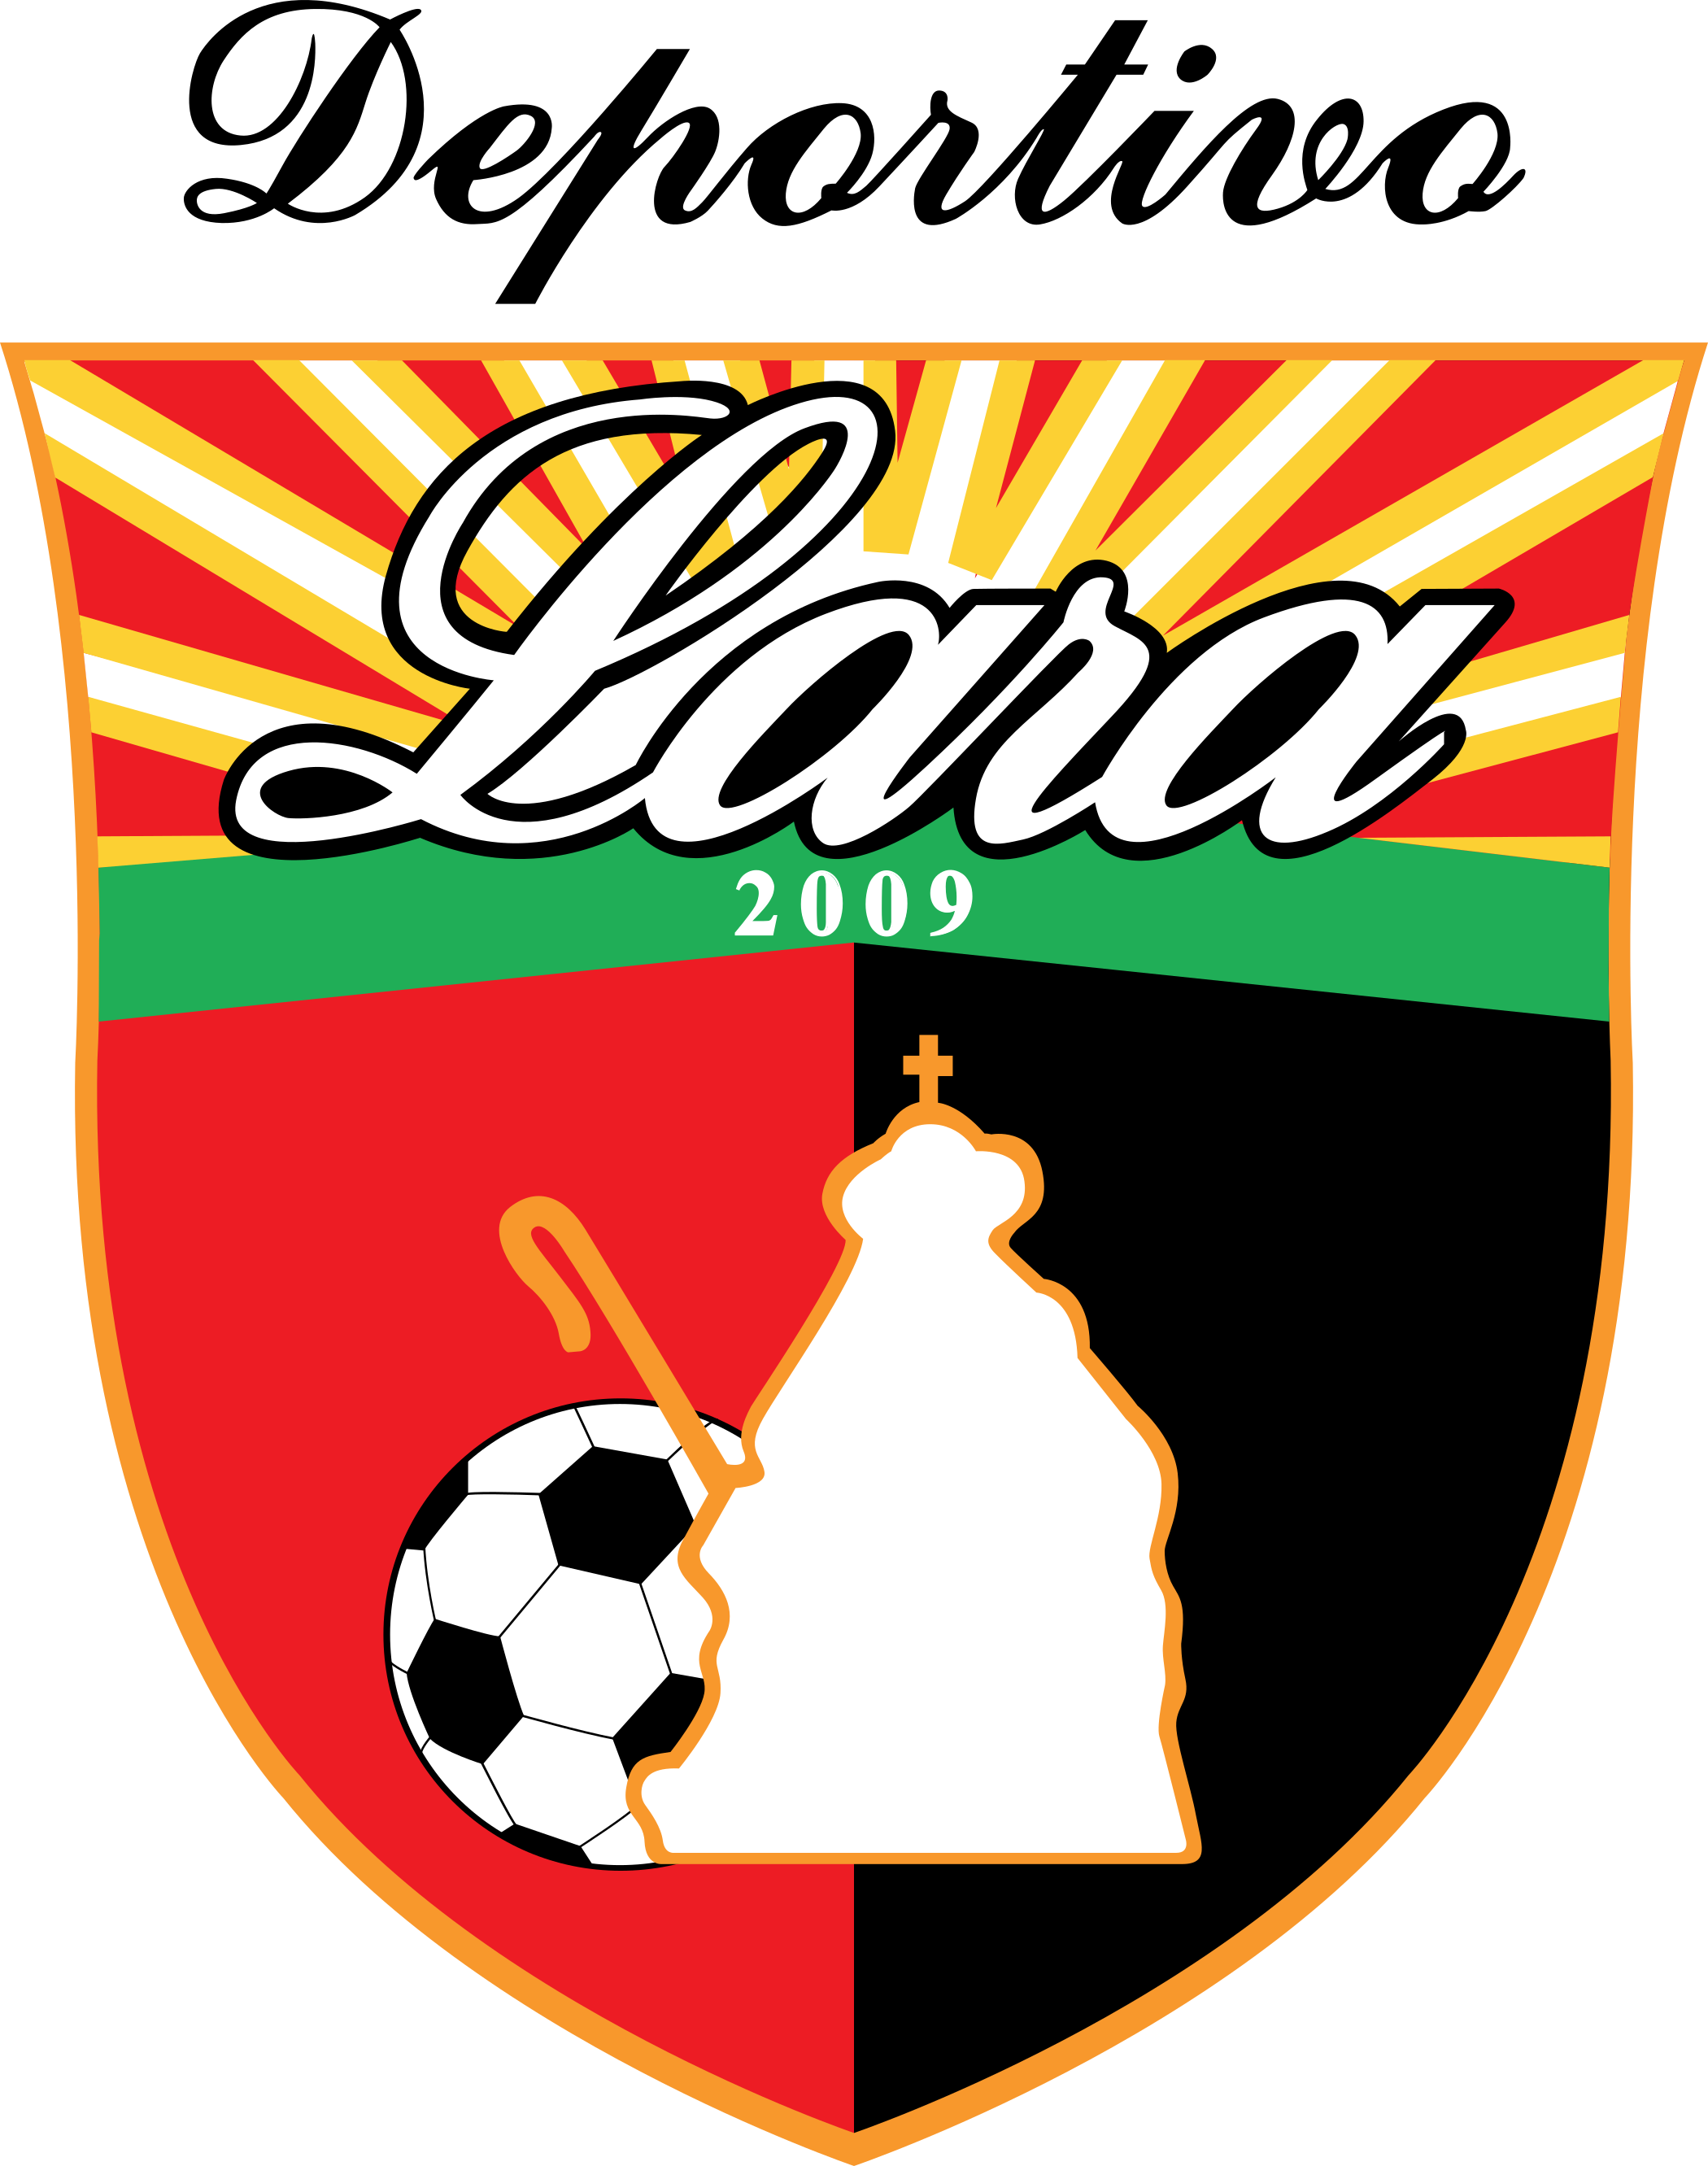 deportivo lara logo escudo 1 - Deportivo Lara Logo - Asociación Civil Deportivo Lara Escudo